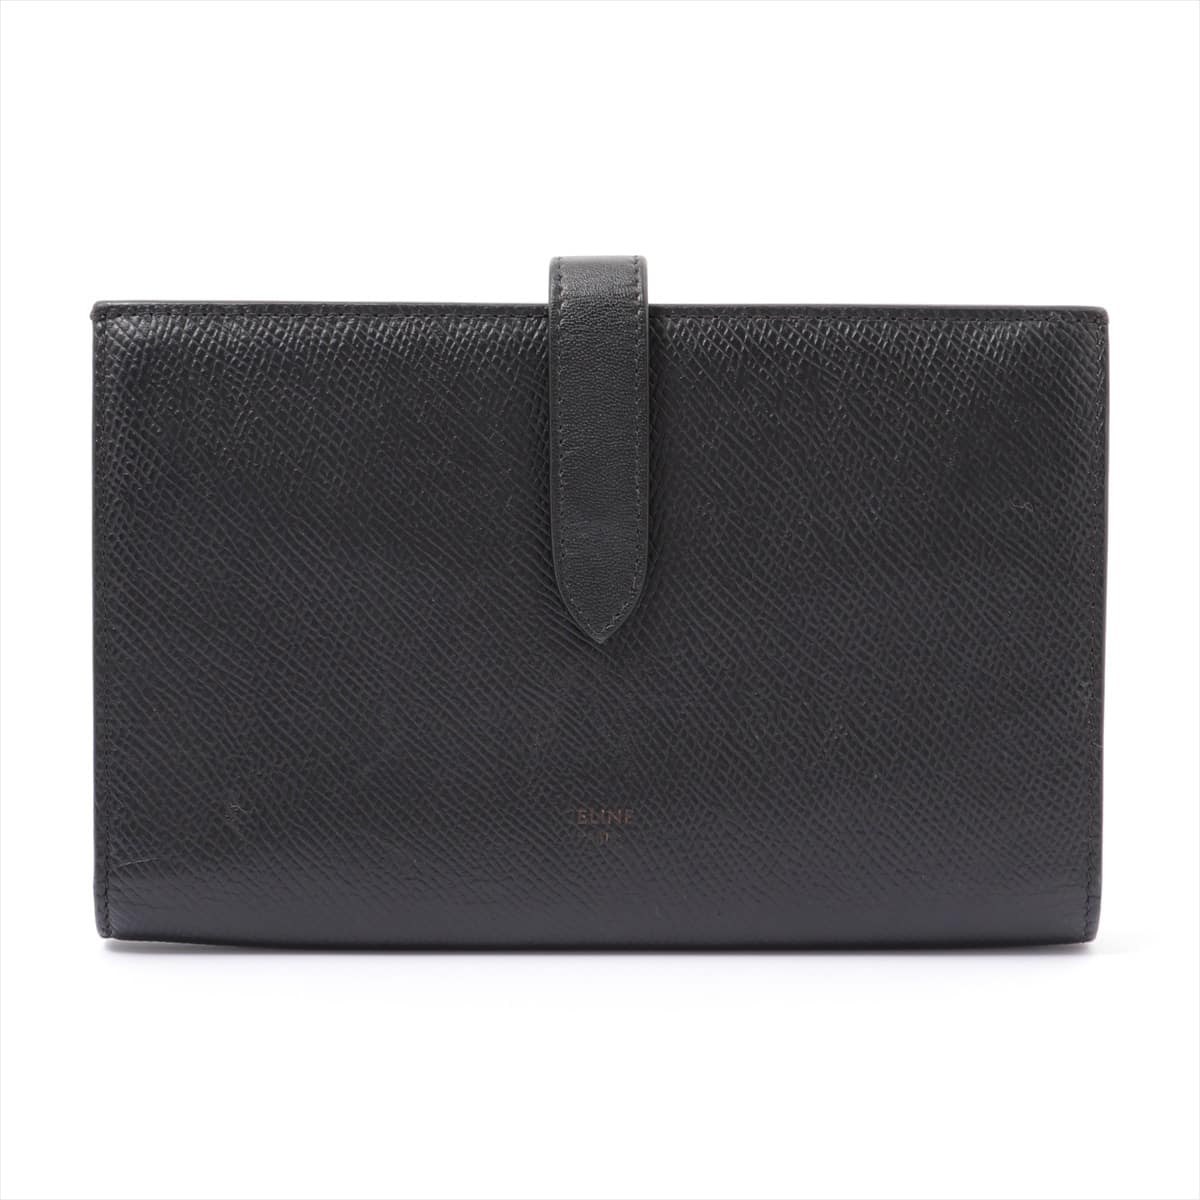 CELINE Strap Large Multifunction Leather Wallet Black